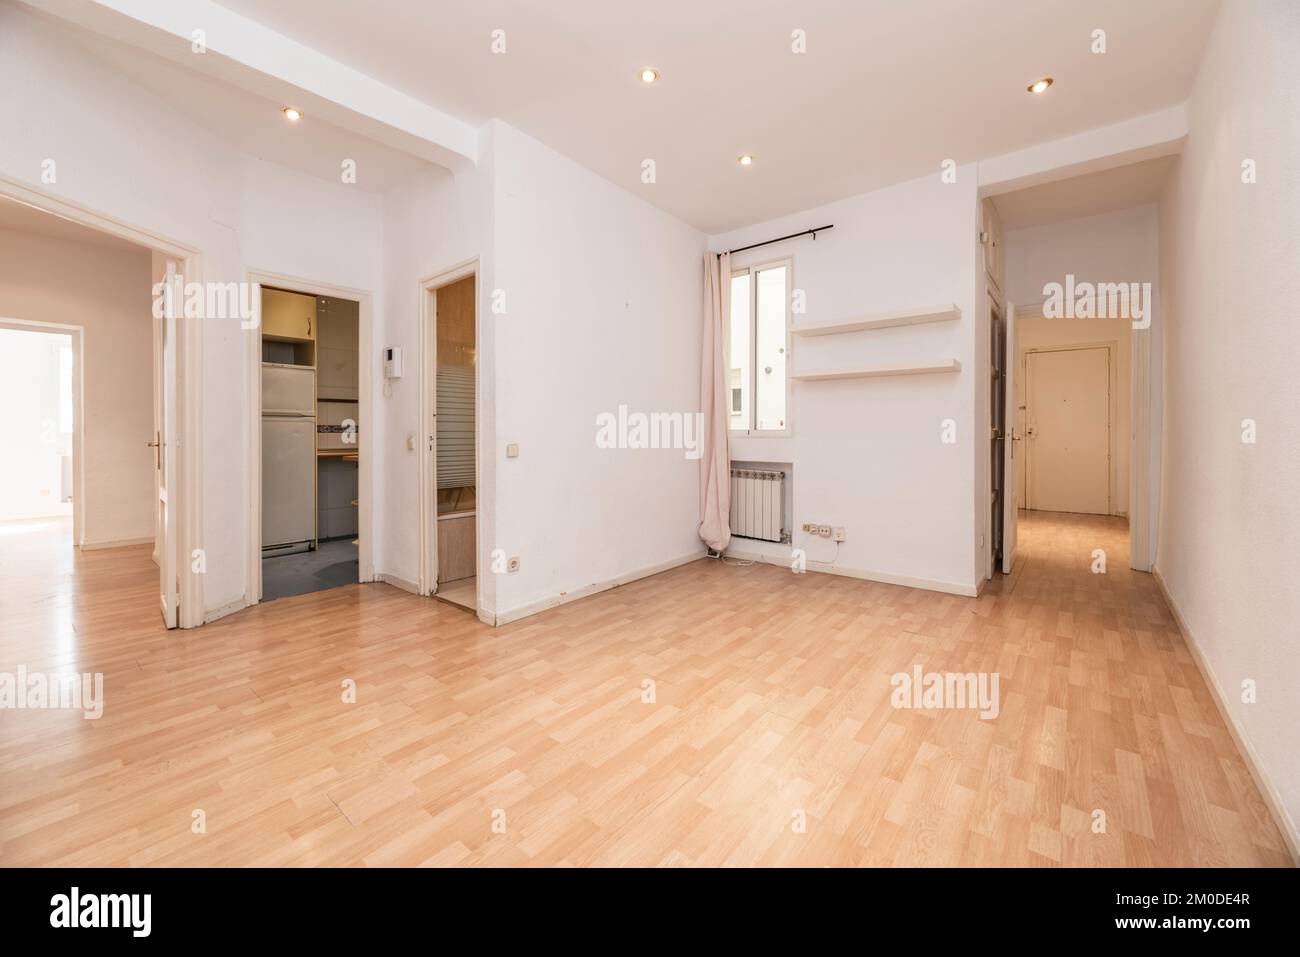 Leeres Wohnzimmer eines Hauses mit Zugang zu mehreren Zimmern, Holzboden und schmale weiße Aluminiumfenster Stockfoto